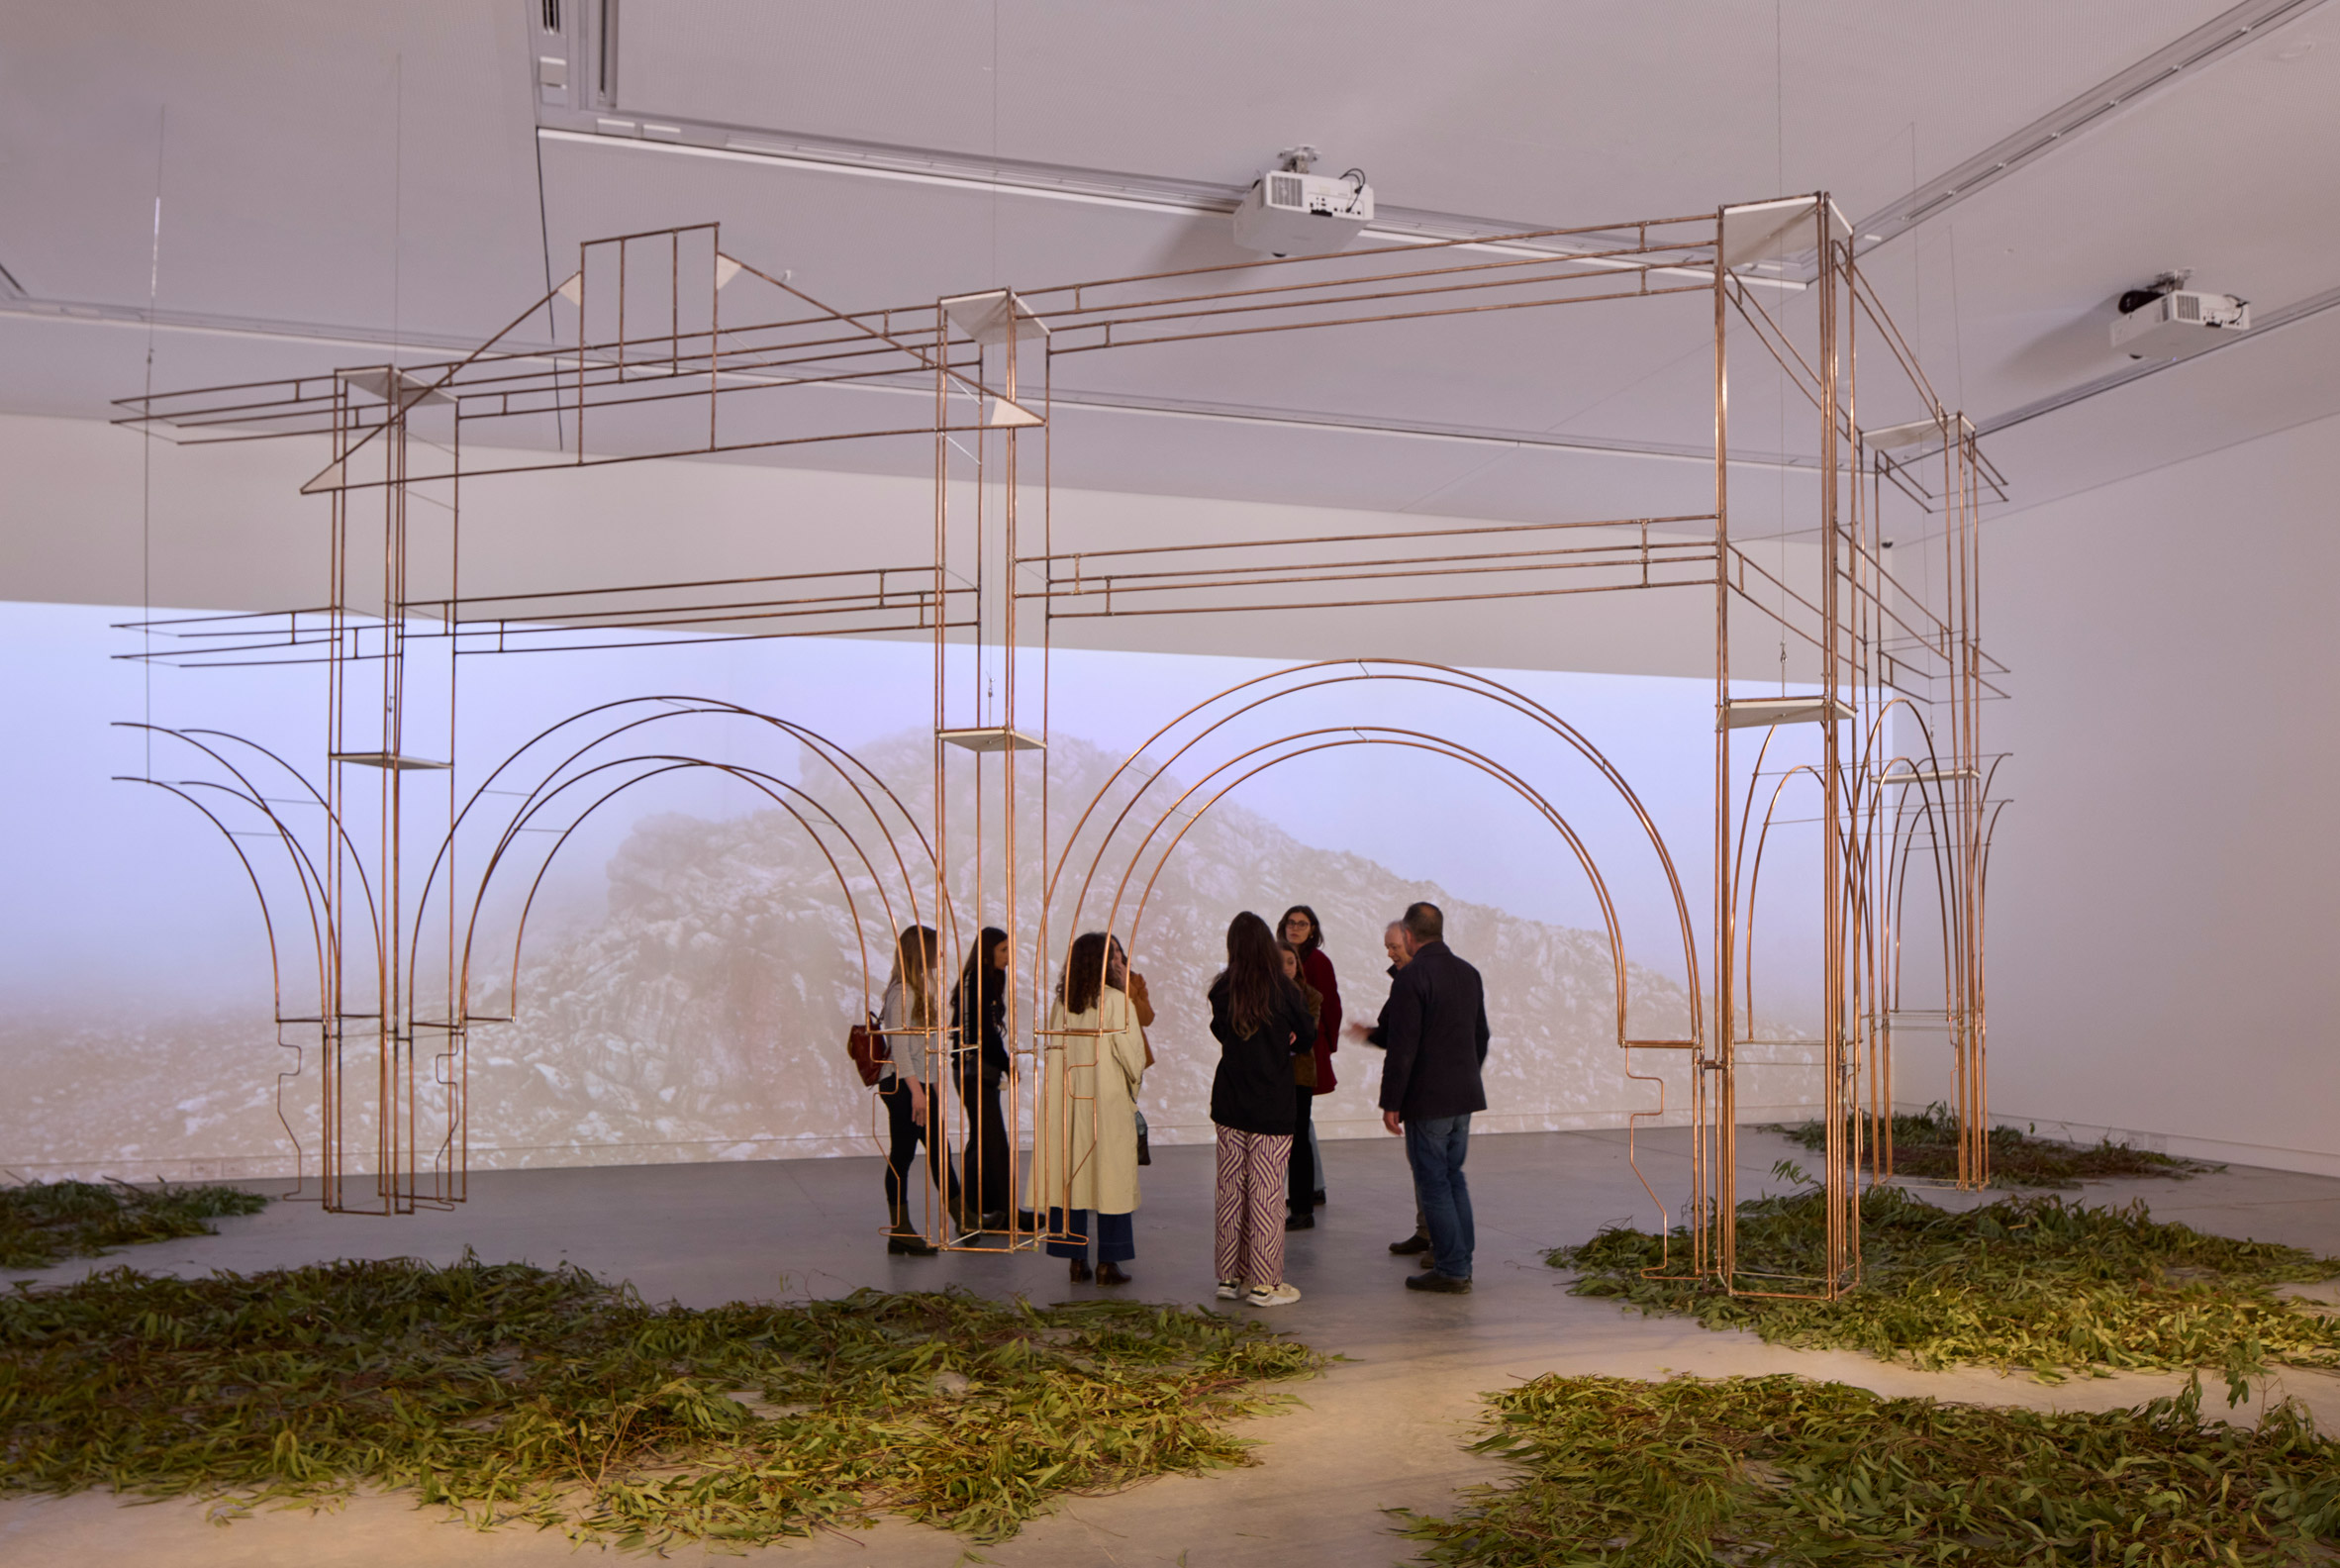 Australia’s Venice Architecture Biennale pavilion “questions the relics